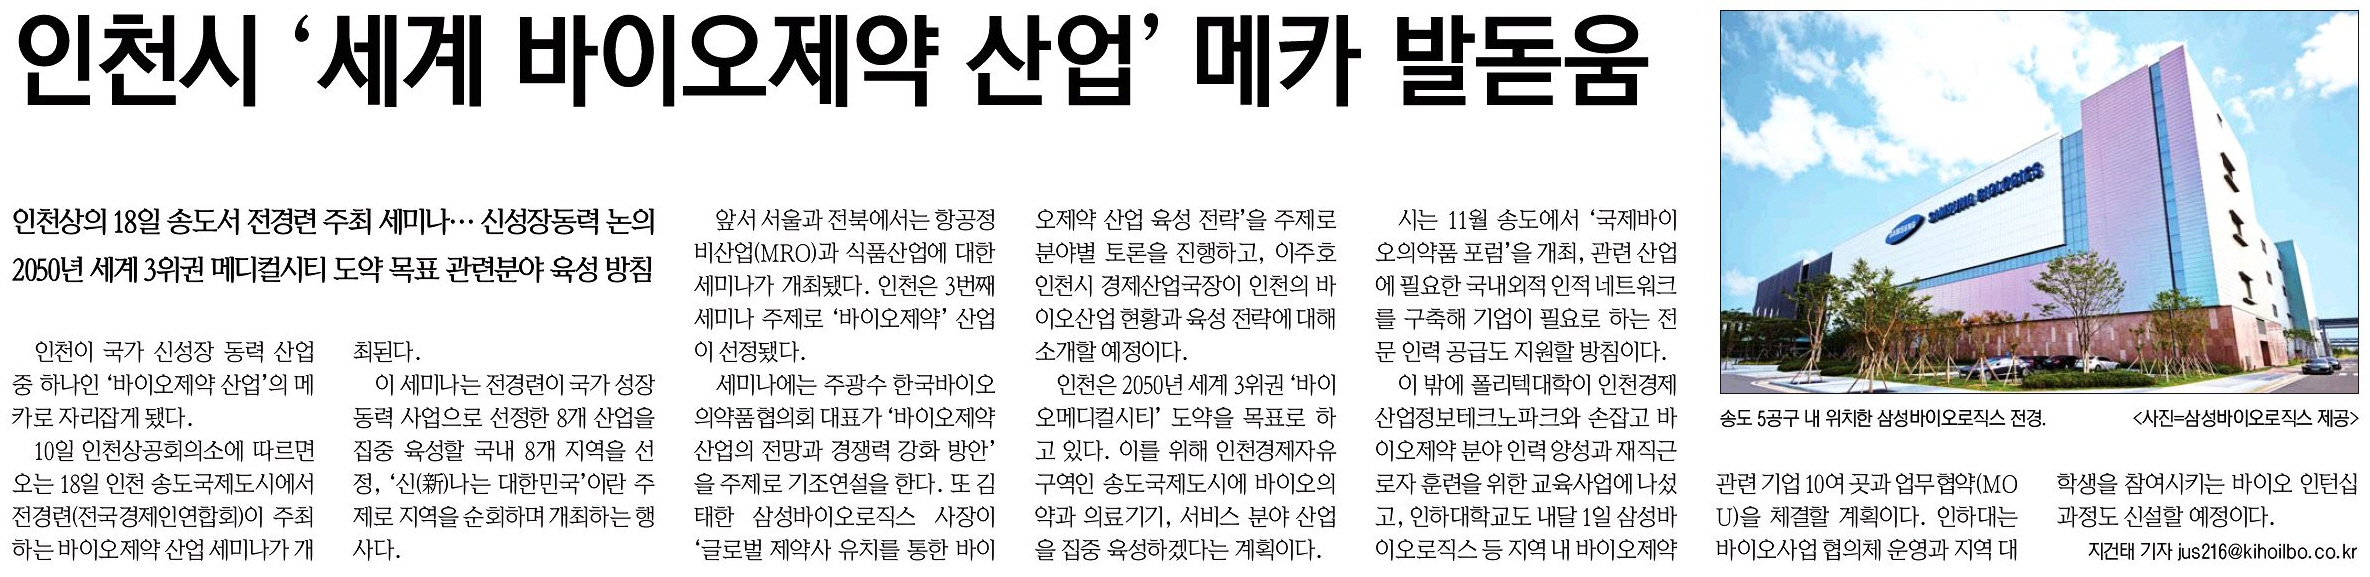 160811 (기호일보) 인천시 세계 바이오제약 산업 메카 발돋움의 1번째 이미지